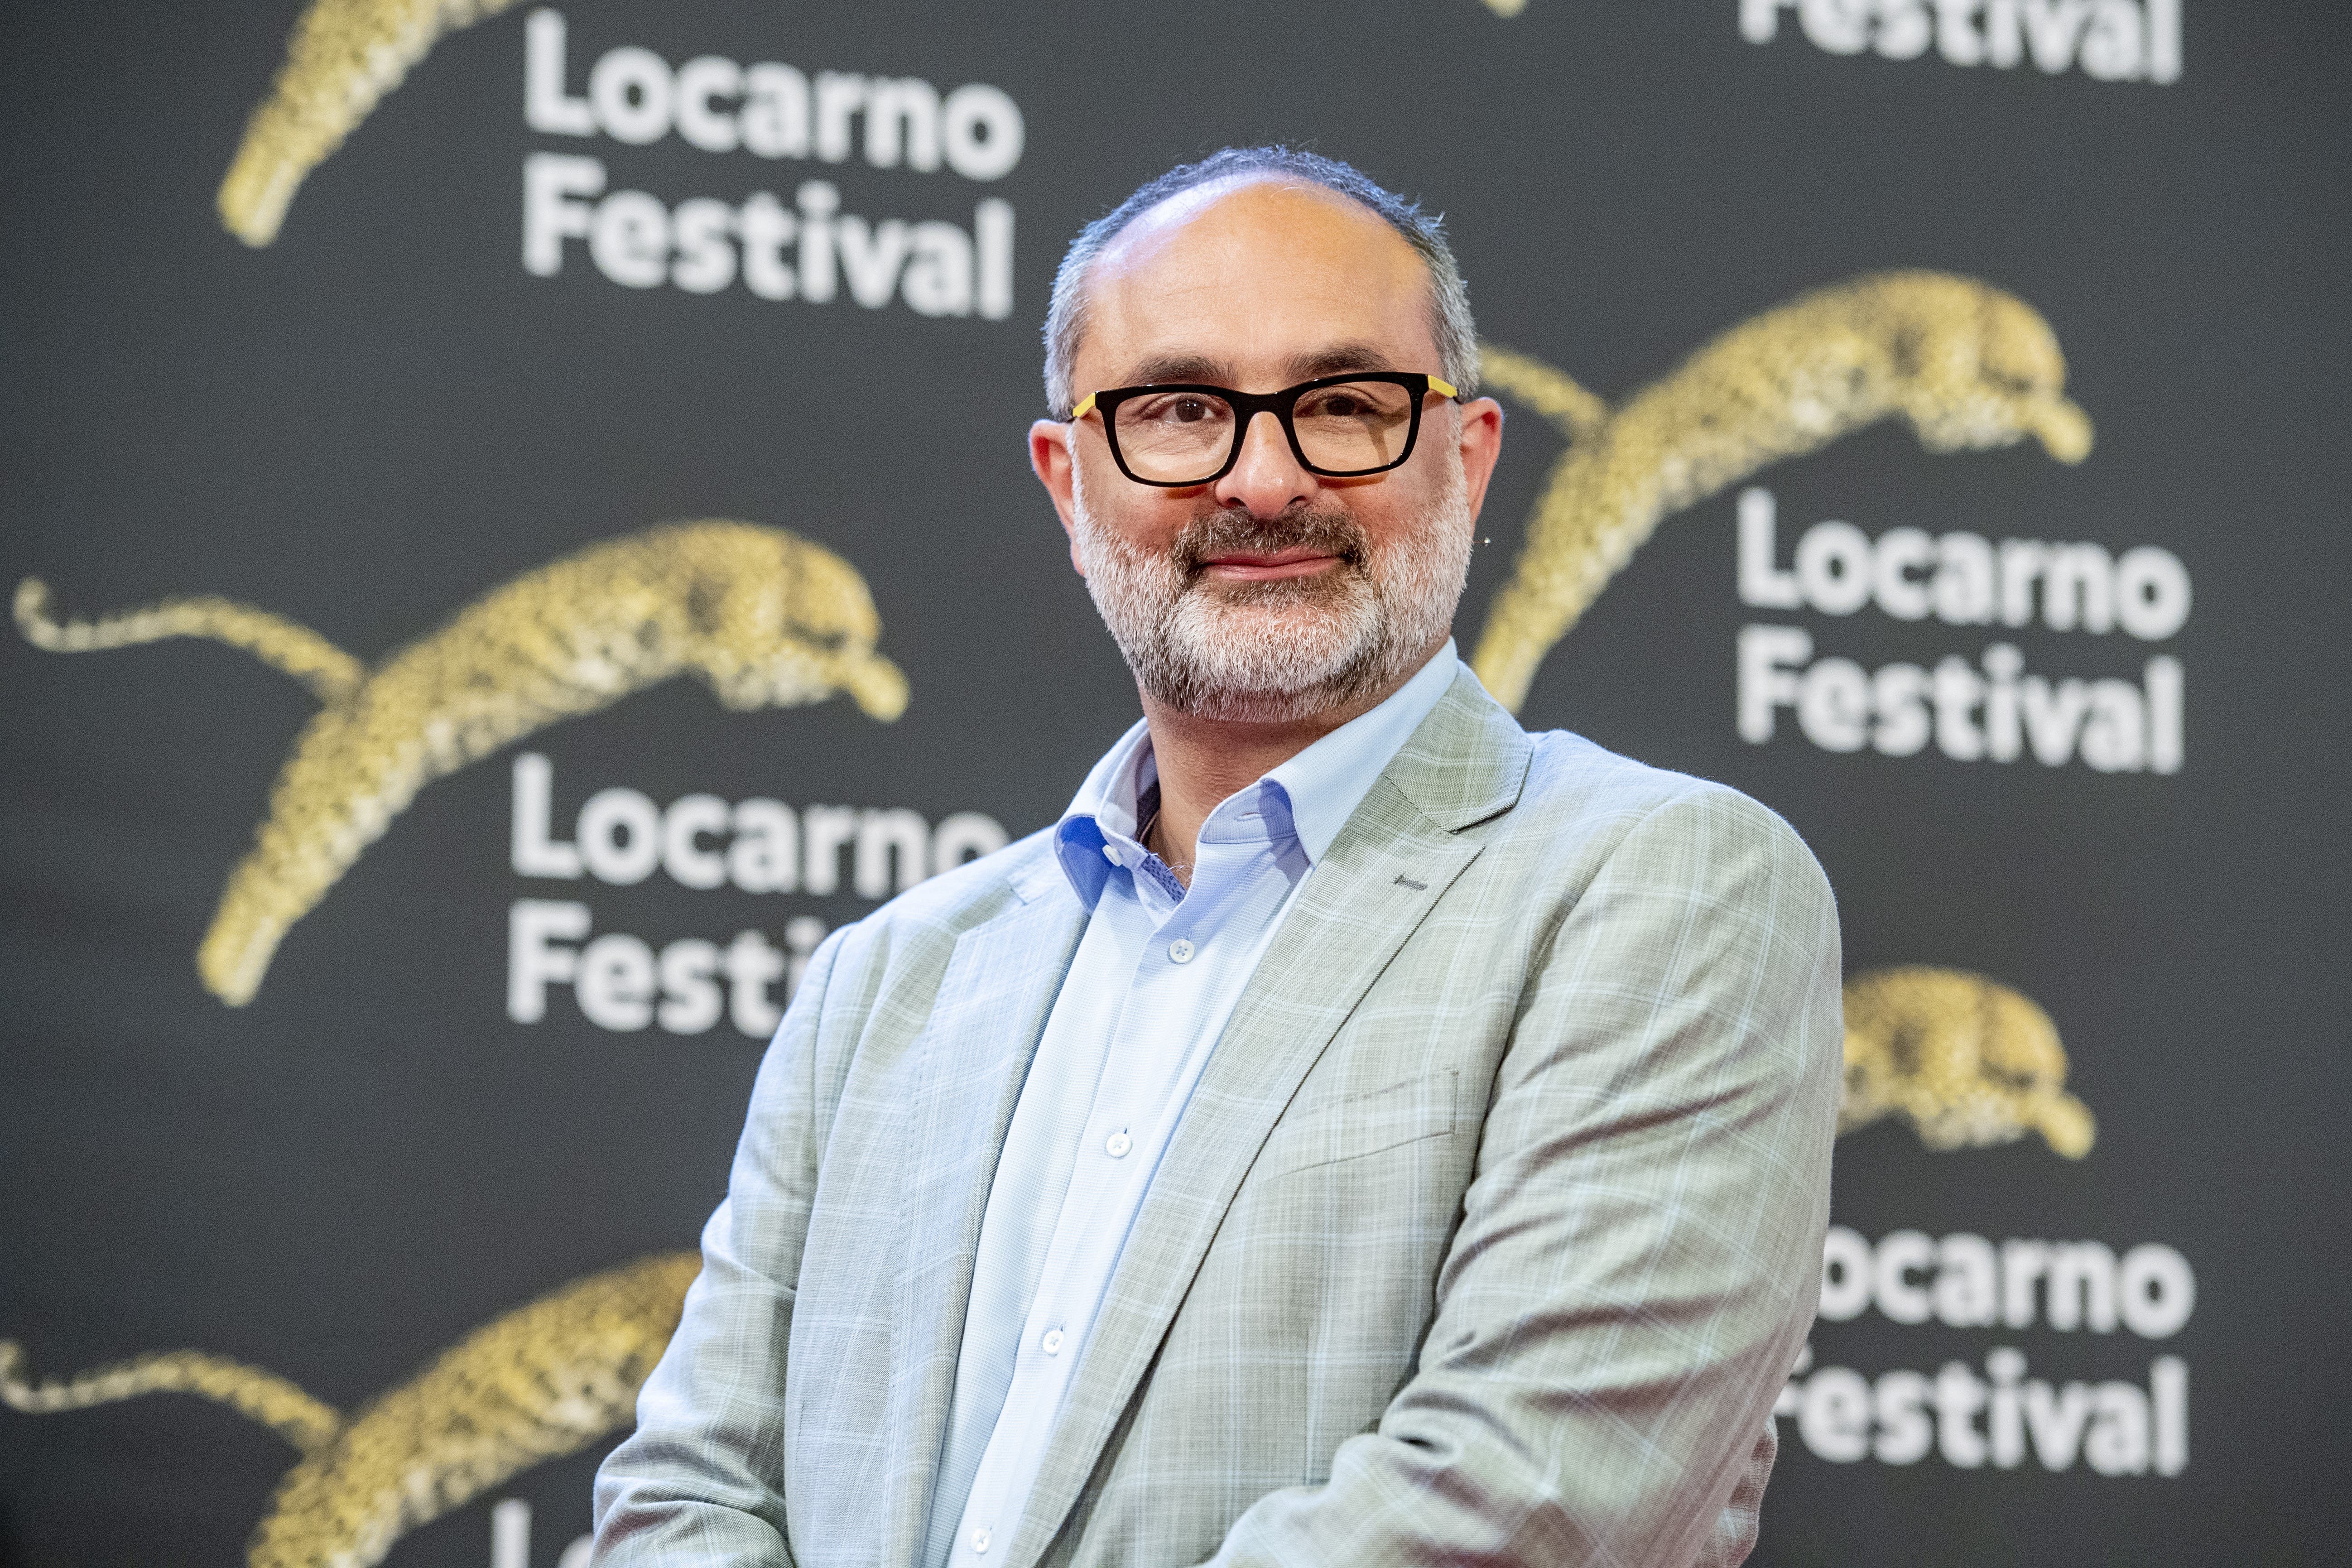 Locarno Film Festival, Giona A. Nazzaro: Der in Zürich geborene Italiener übernahm 2020 von Lili Hinstin, die erst zwei Ausgaben verantwortet hatte.